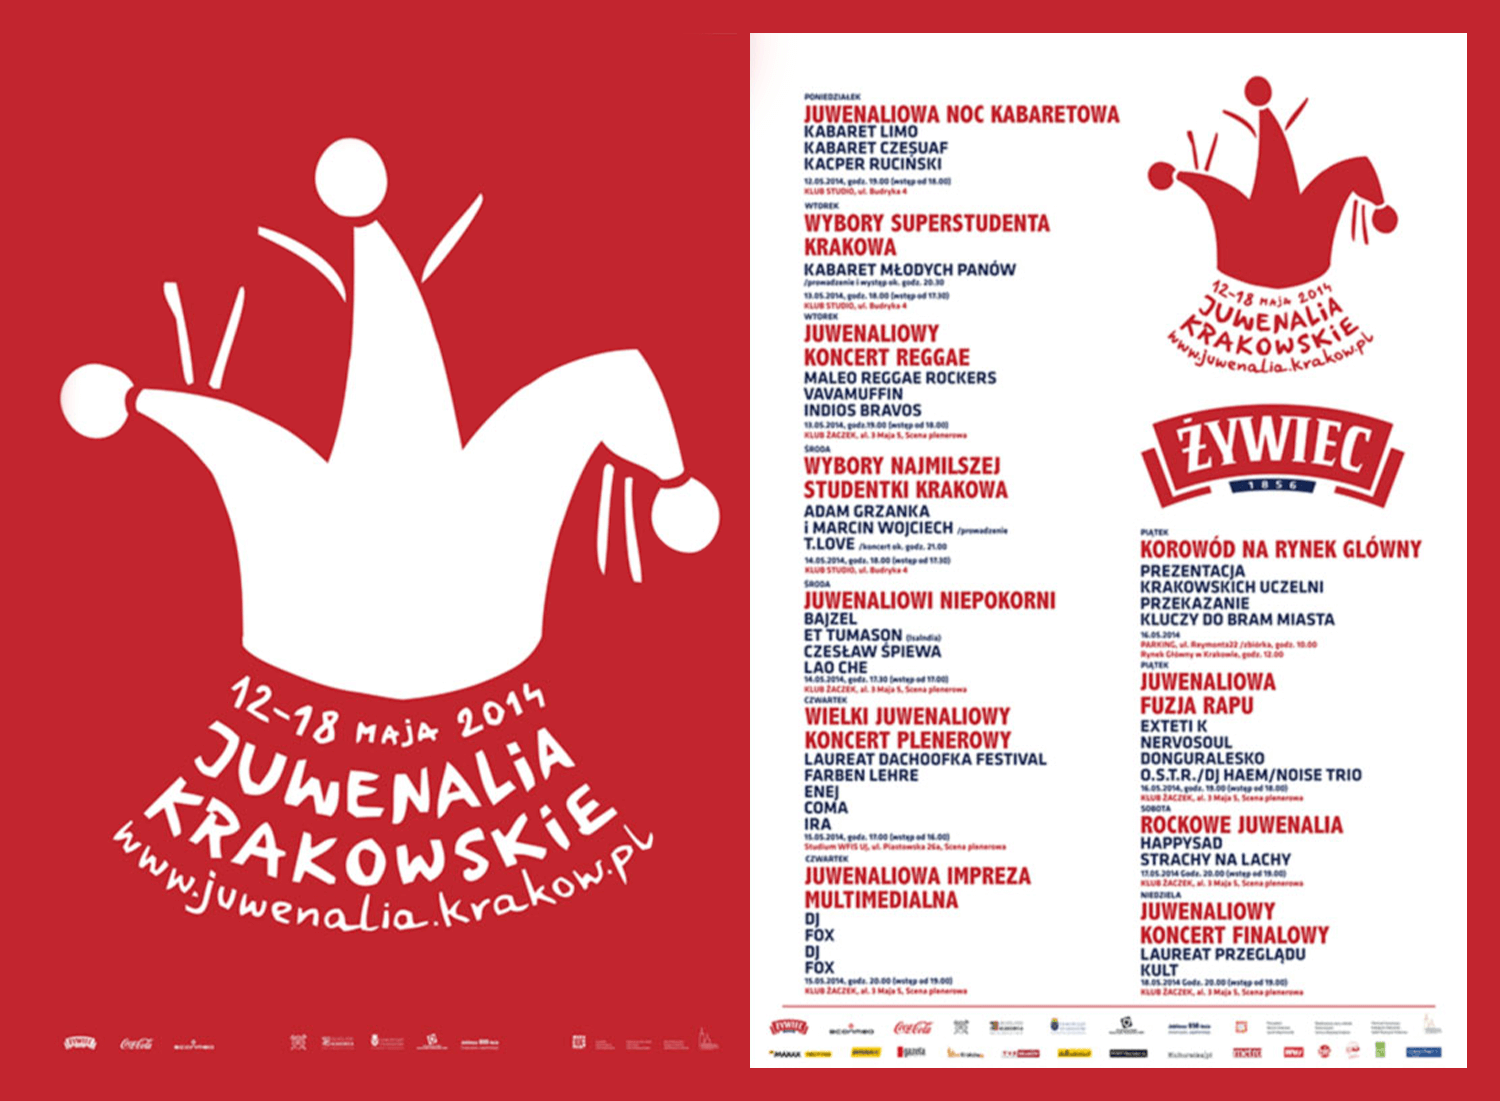 Juwenalia Krakowskie 2014